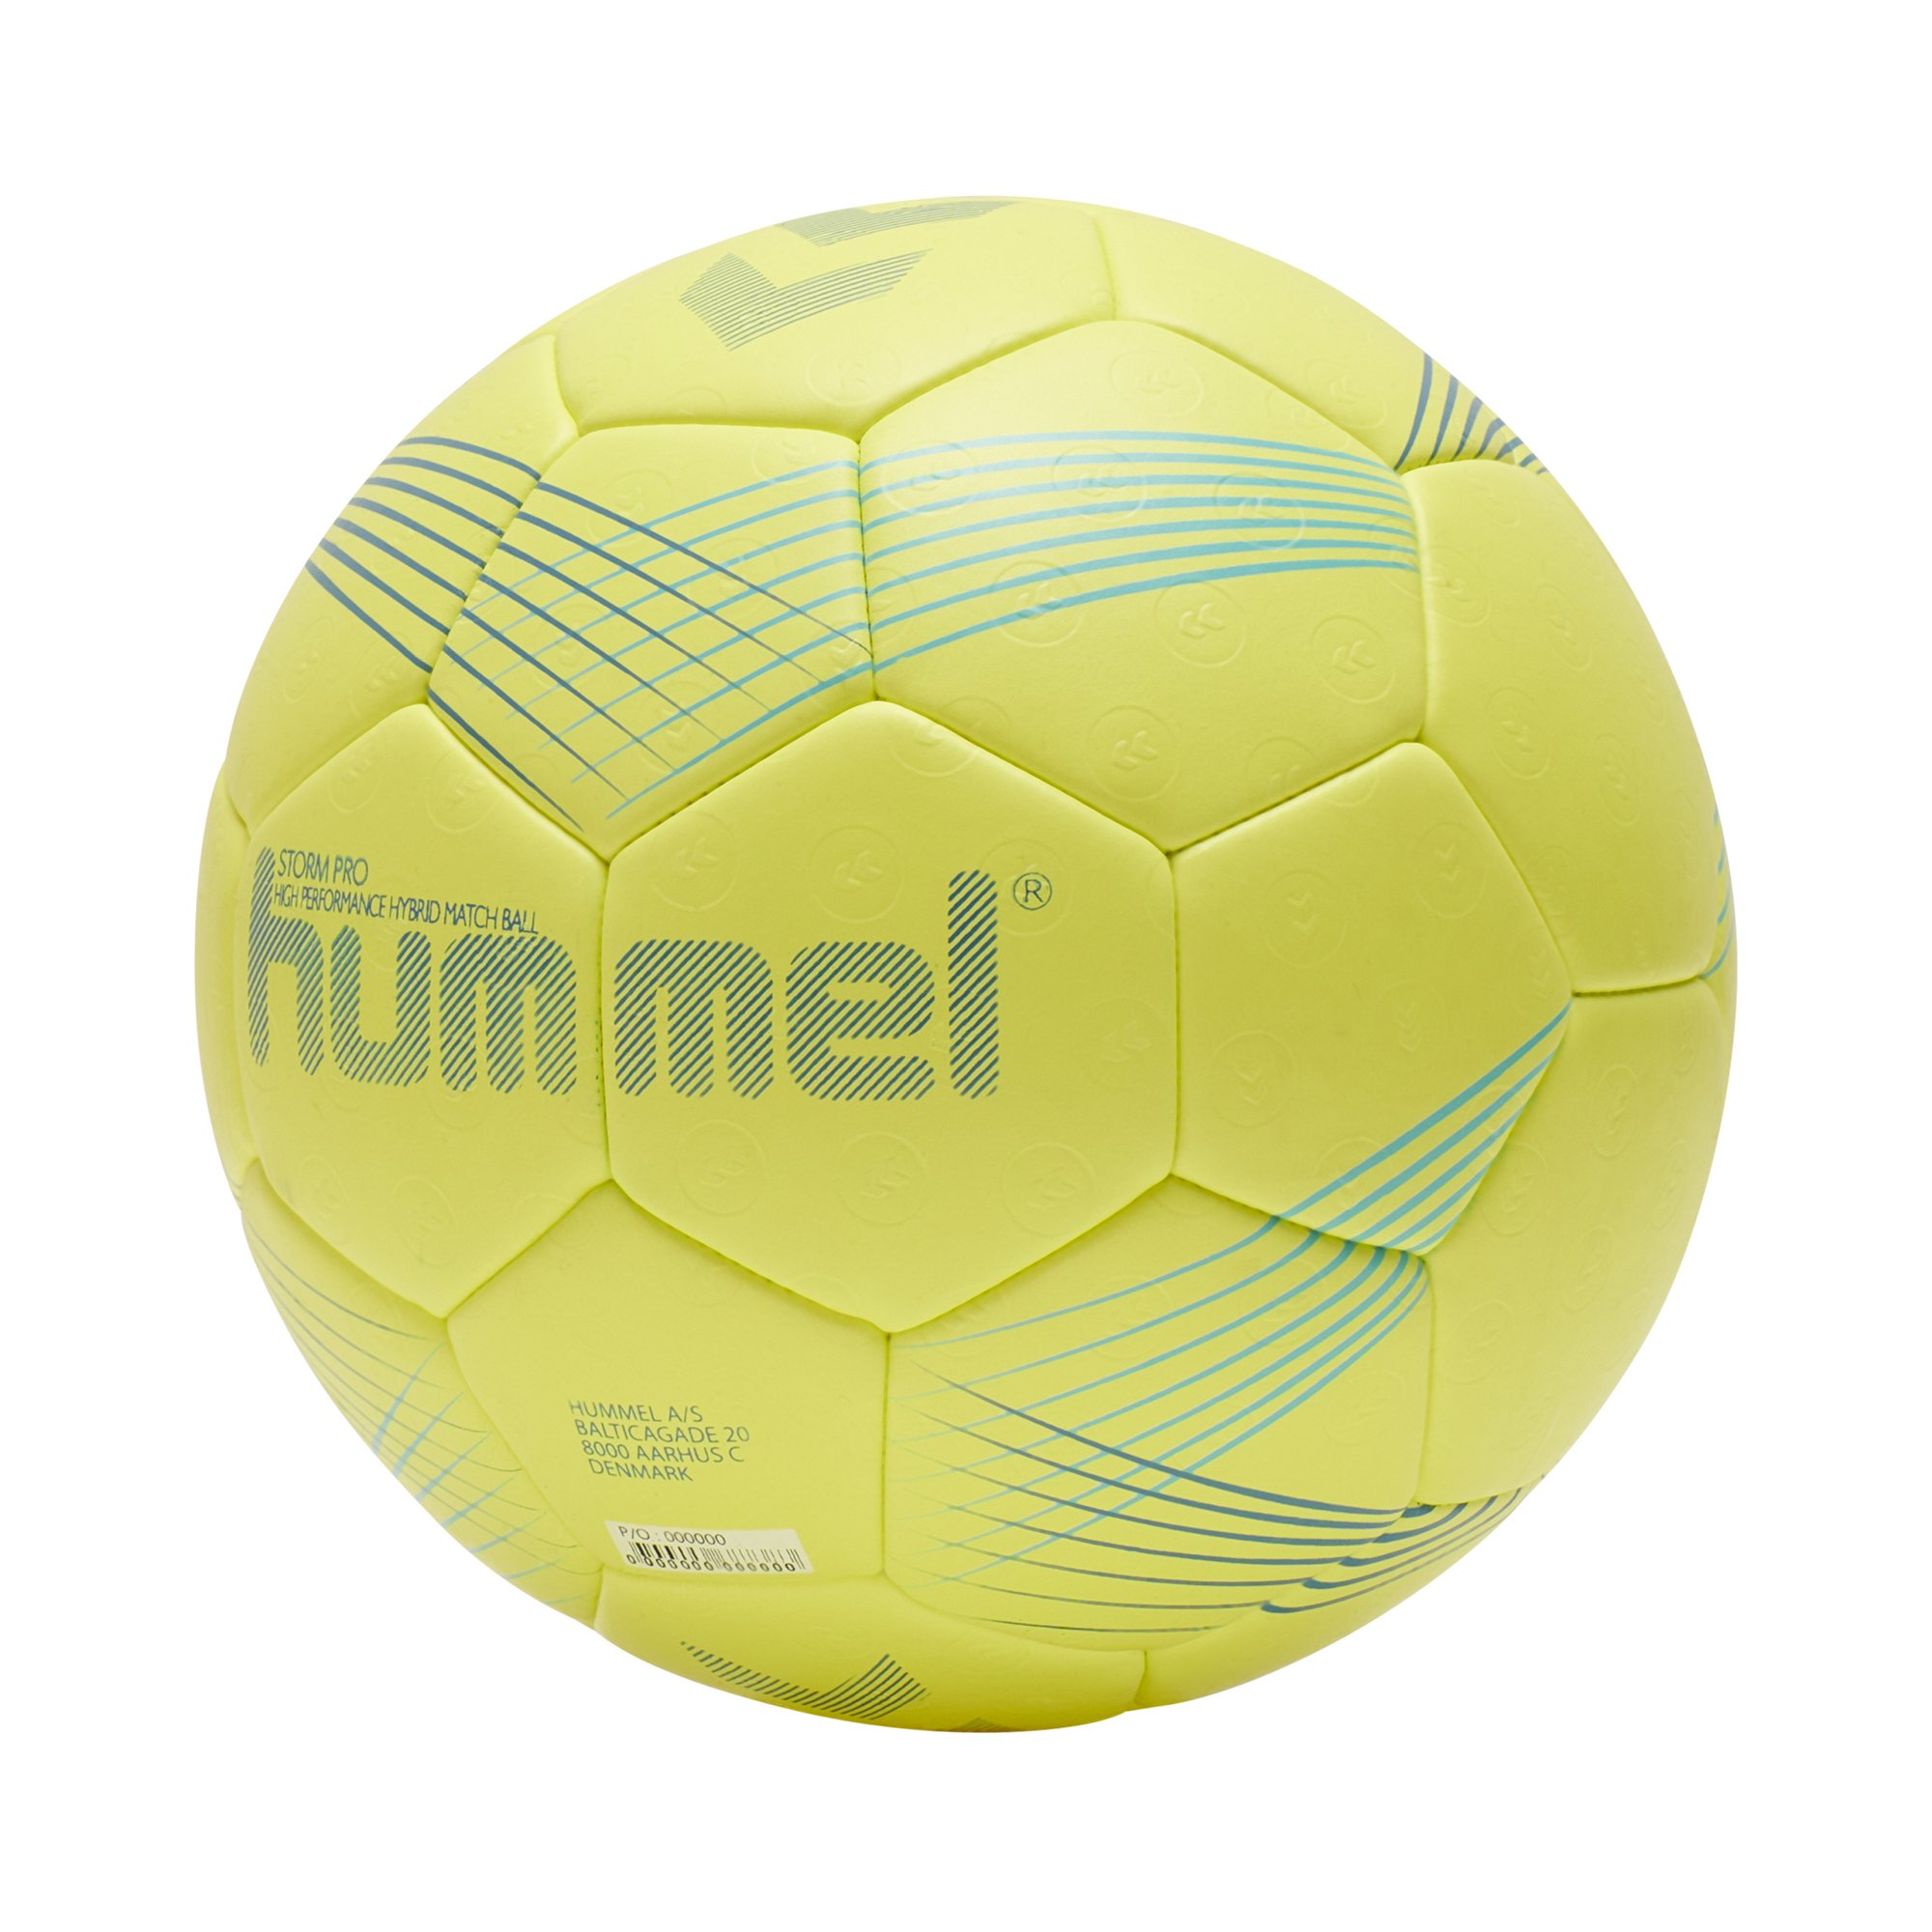 Hummel Storm Pro Handball Handbälle 